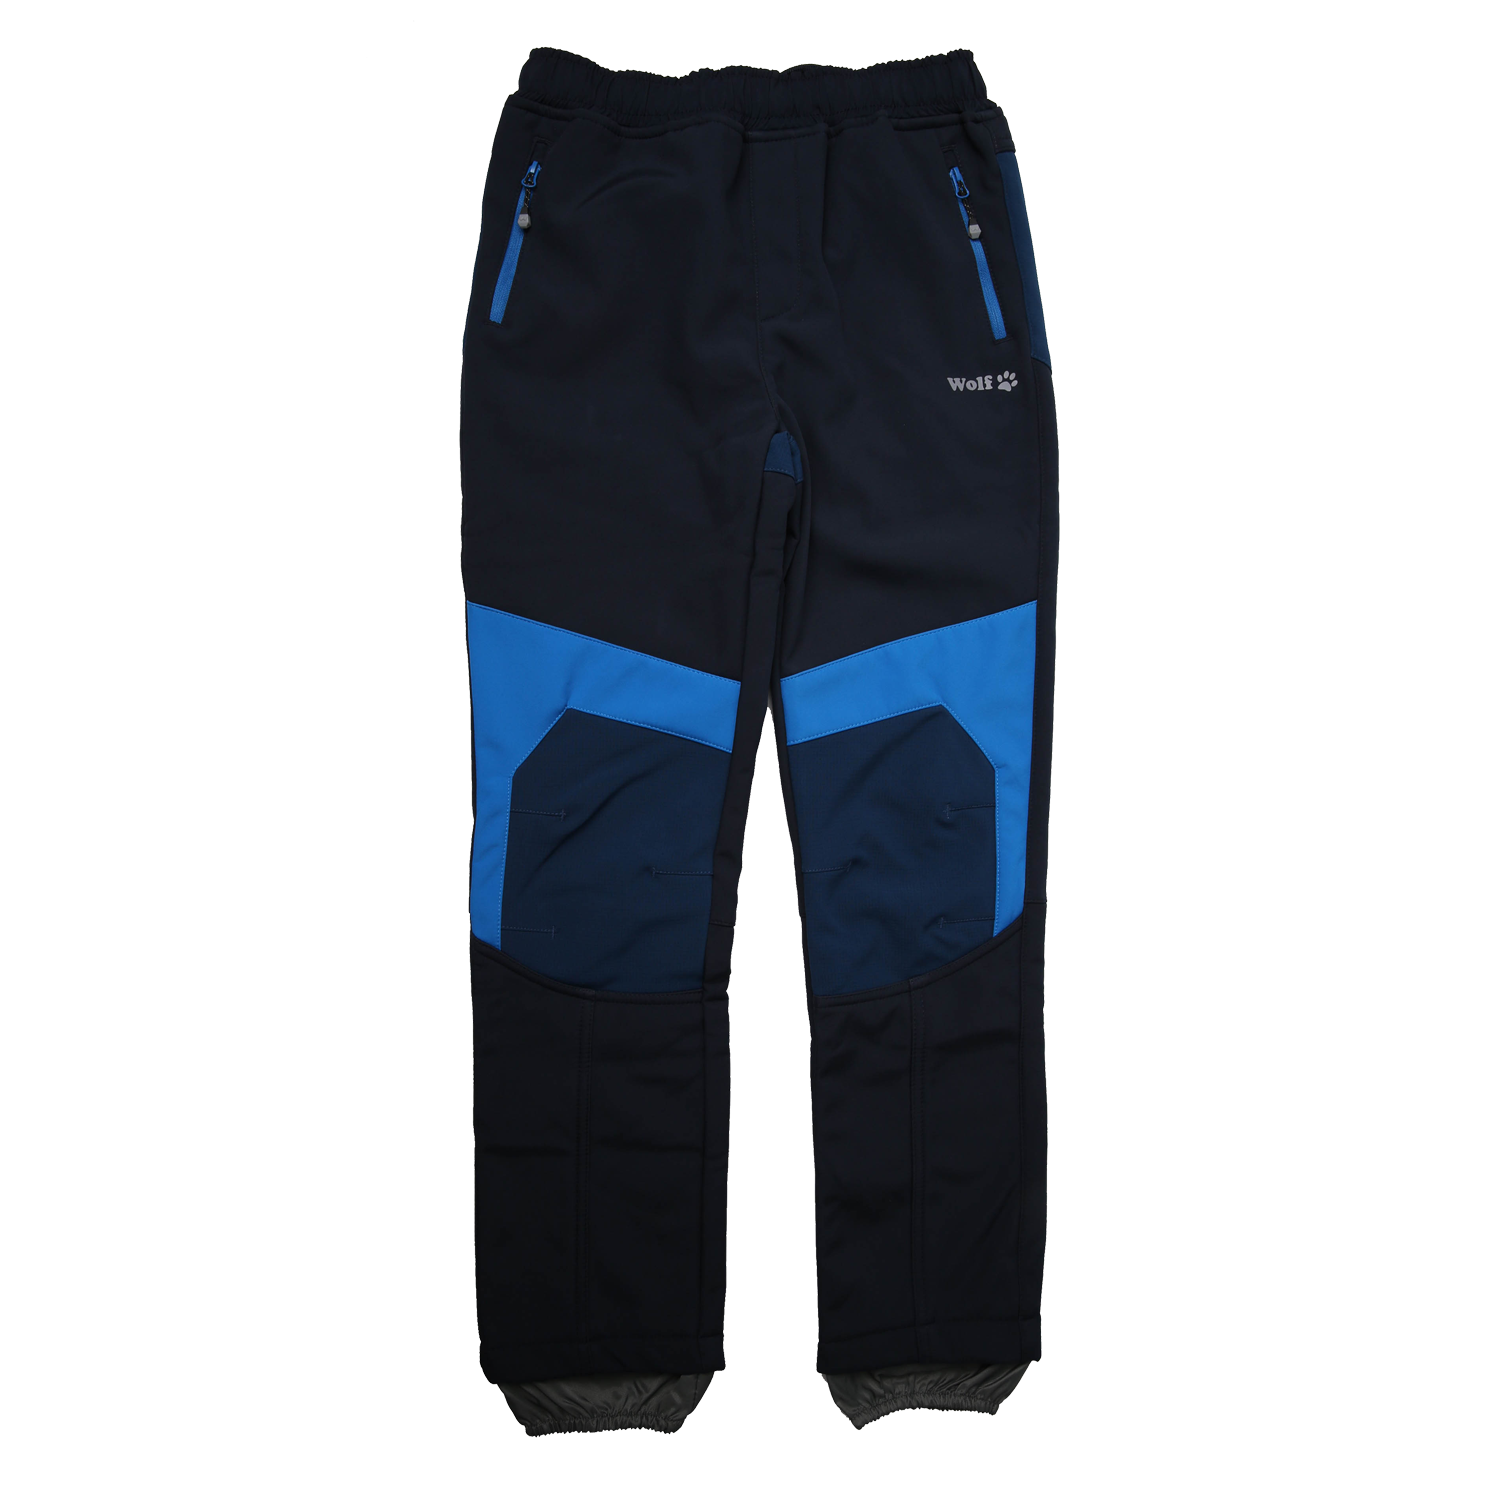 Chlapecké softshellové kalhoty, zateplené - Wolf B2294, tmavě modrá Barva: Modrá tmavě, Velikost: 146